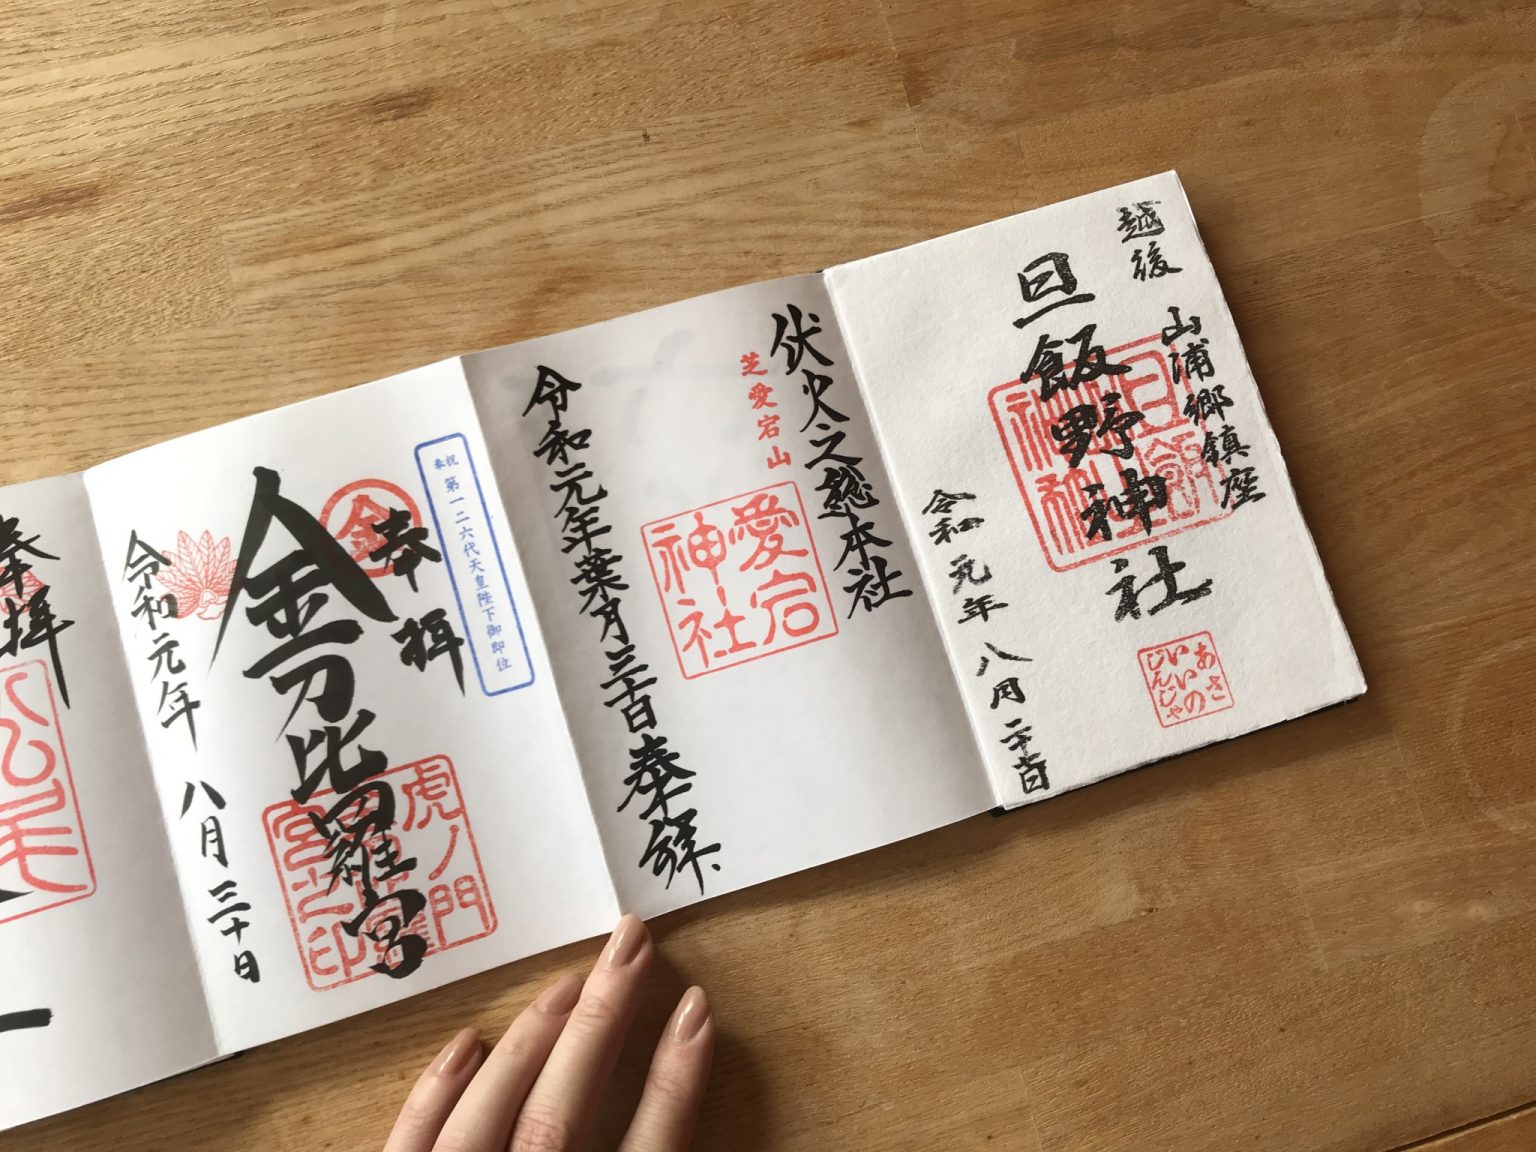 右端の〈旦飯野神社〉の御朱印は、自分で半紙に押印をして完成させるもの！